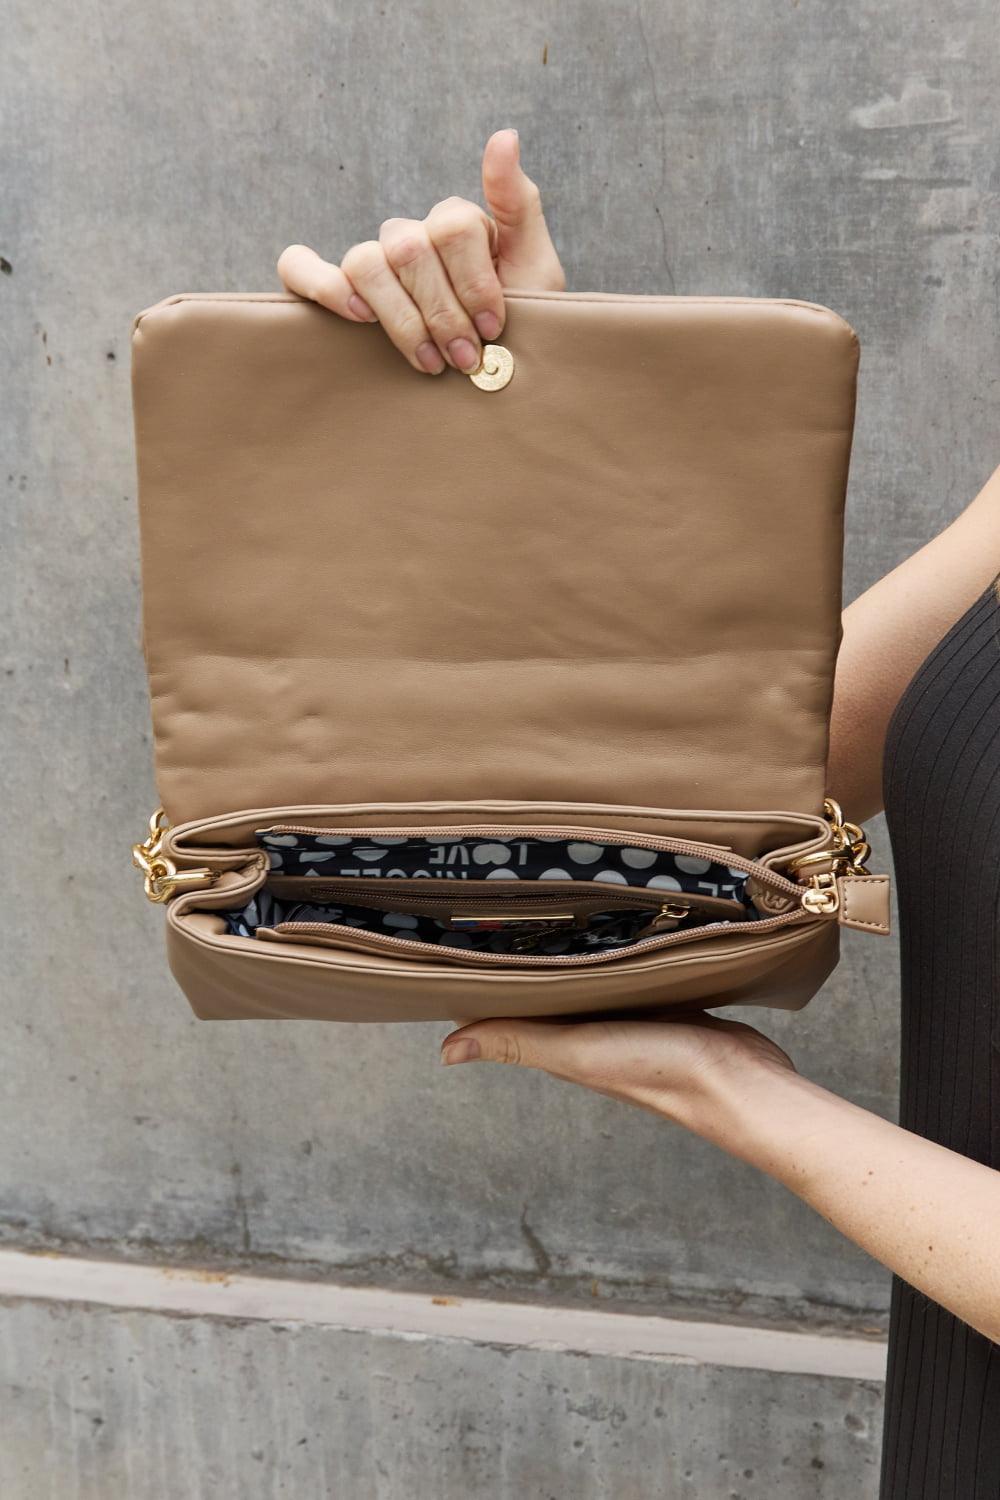 Nicole Lee Floral Embellished Double Strap Handbag - MXSTUDIO.COM